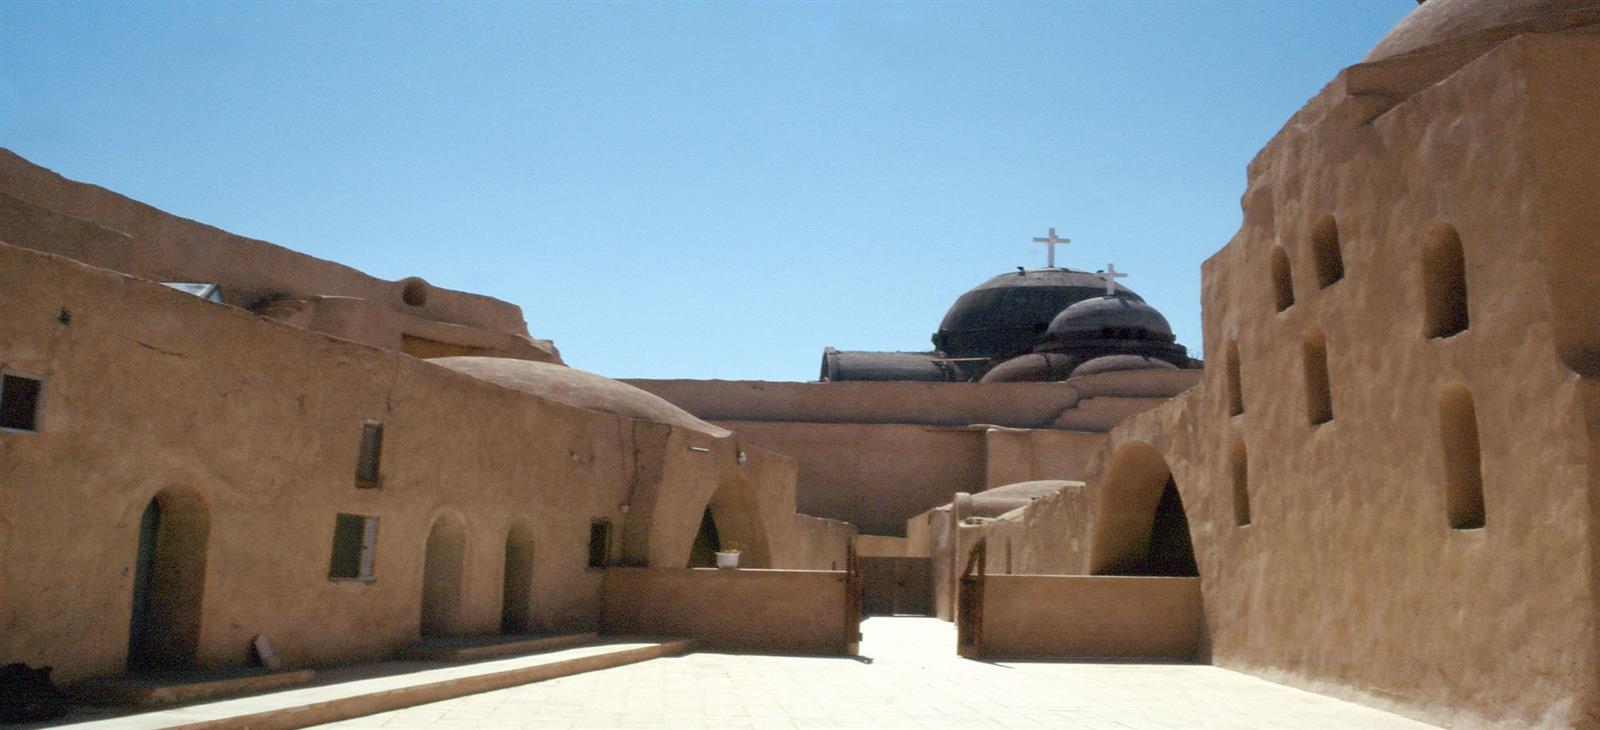 Wadi El Natrun Monasterio